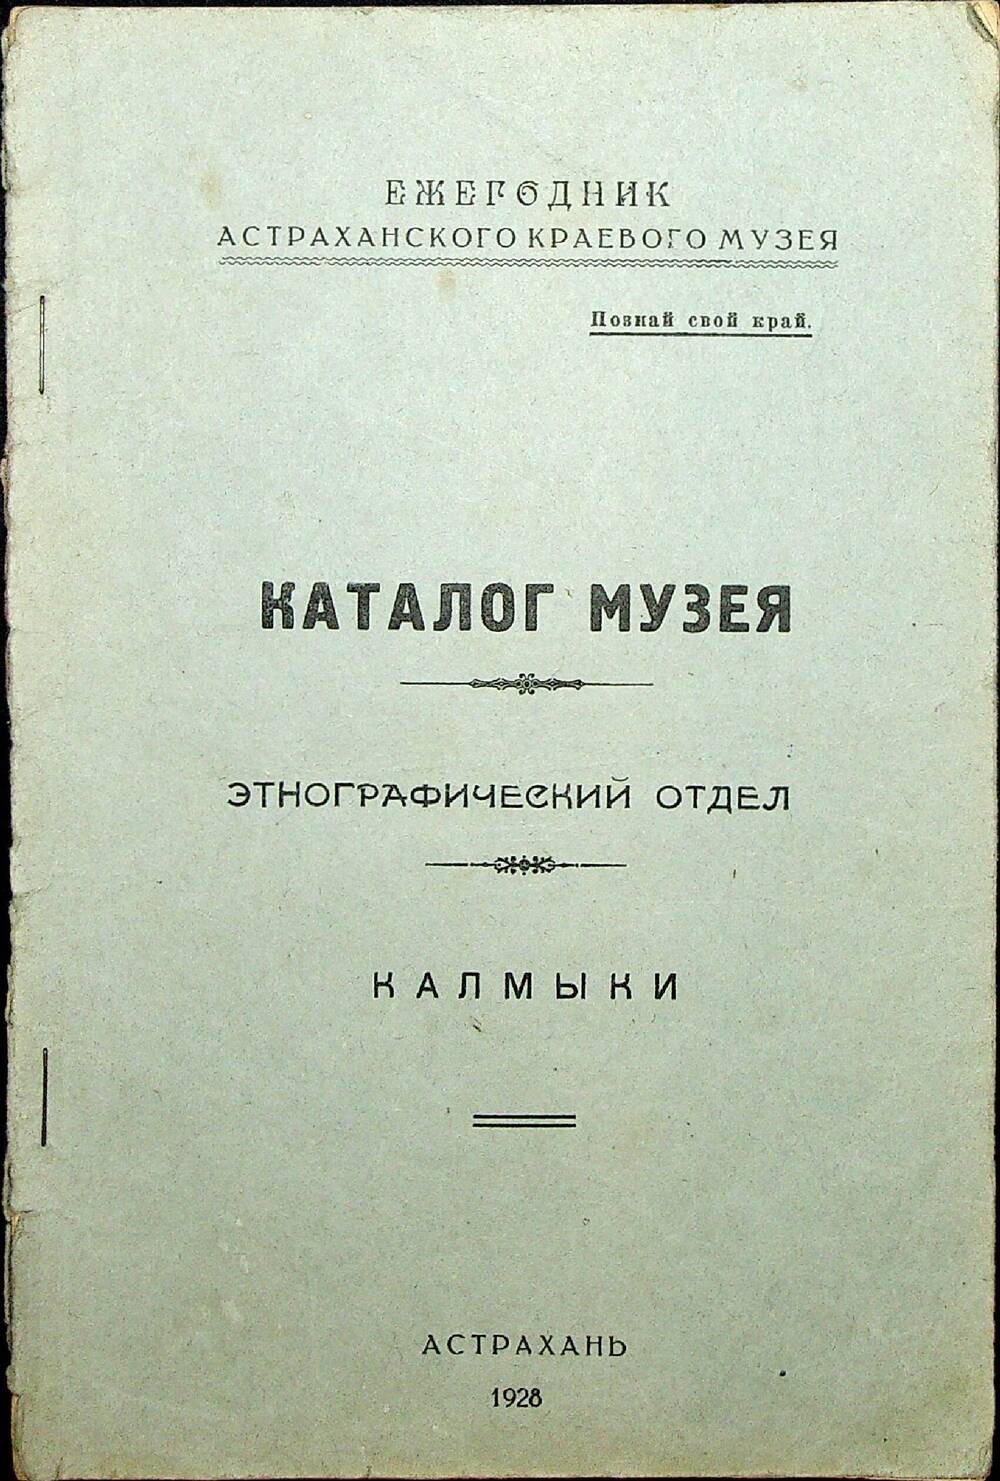 Каталог музея. Этнографический отдел. Калмыки. Астрахань, 1928 г.